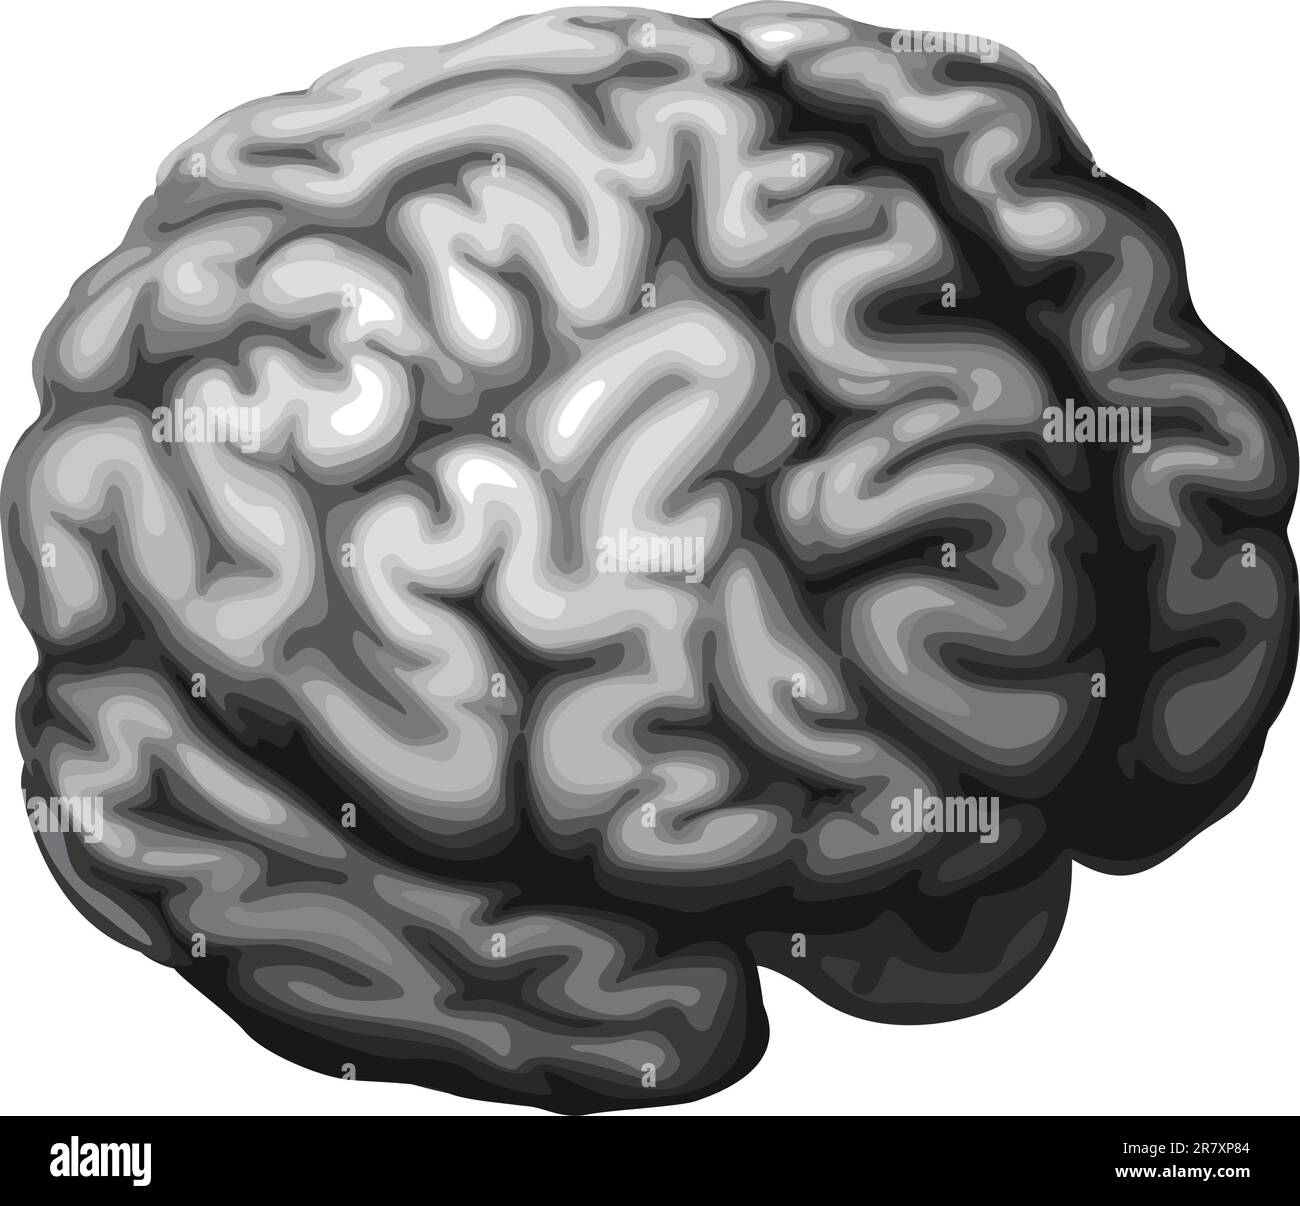 Illustrazione di un cervello monocromatica in tonalità di grigio Illustrazione Vettoriale